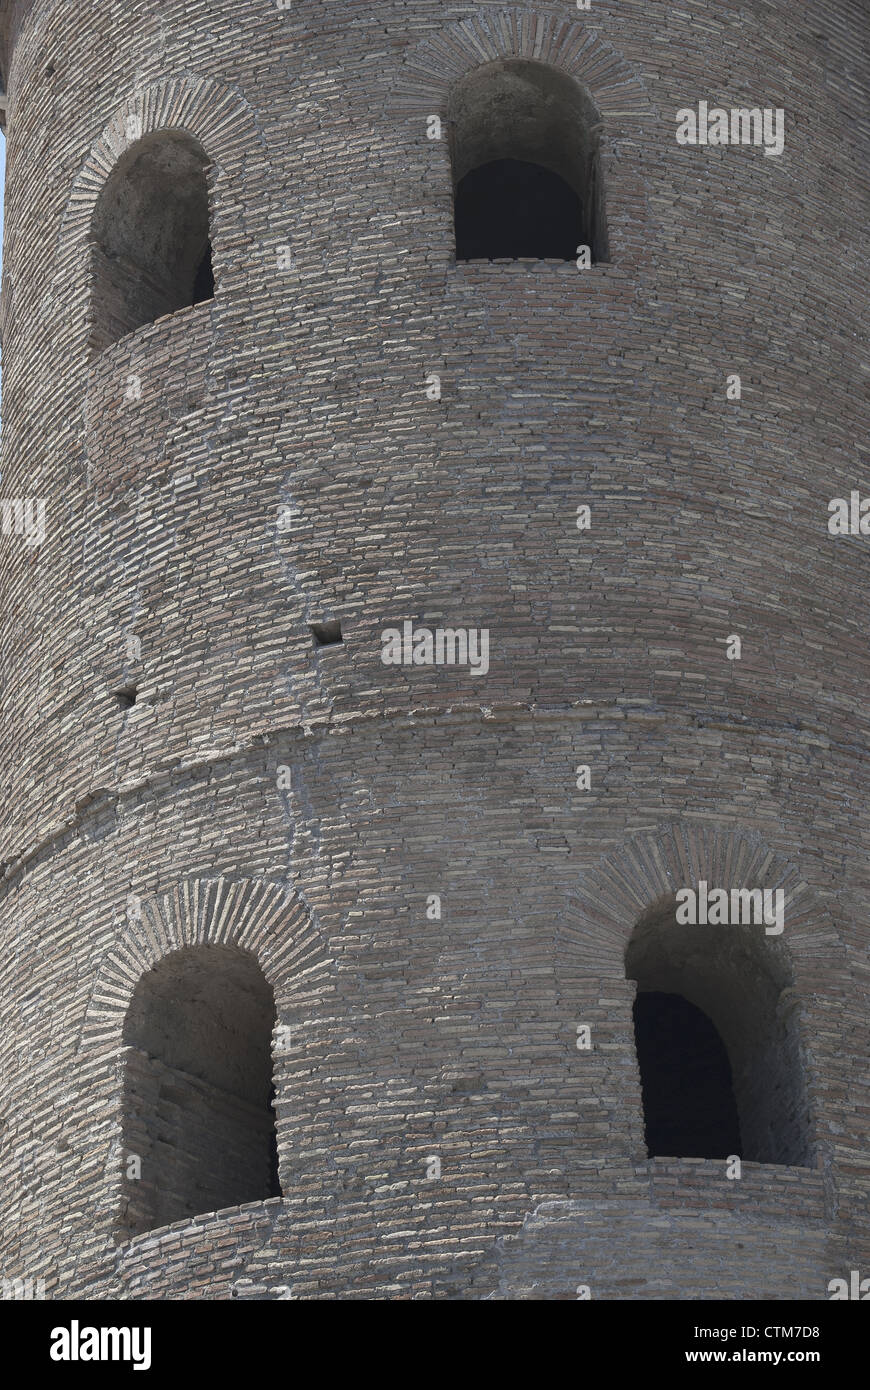 Roma, Mura Aureliane. Dettaglio del Porto di San Giovanni Foto Stock